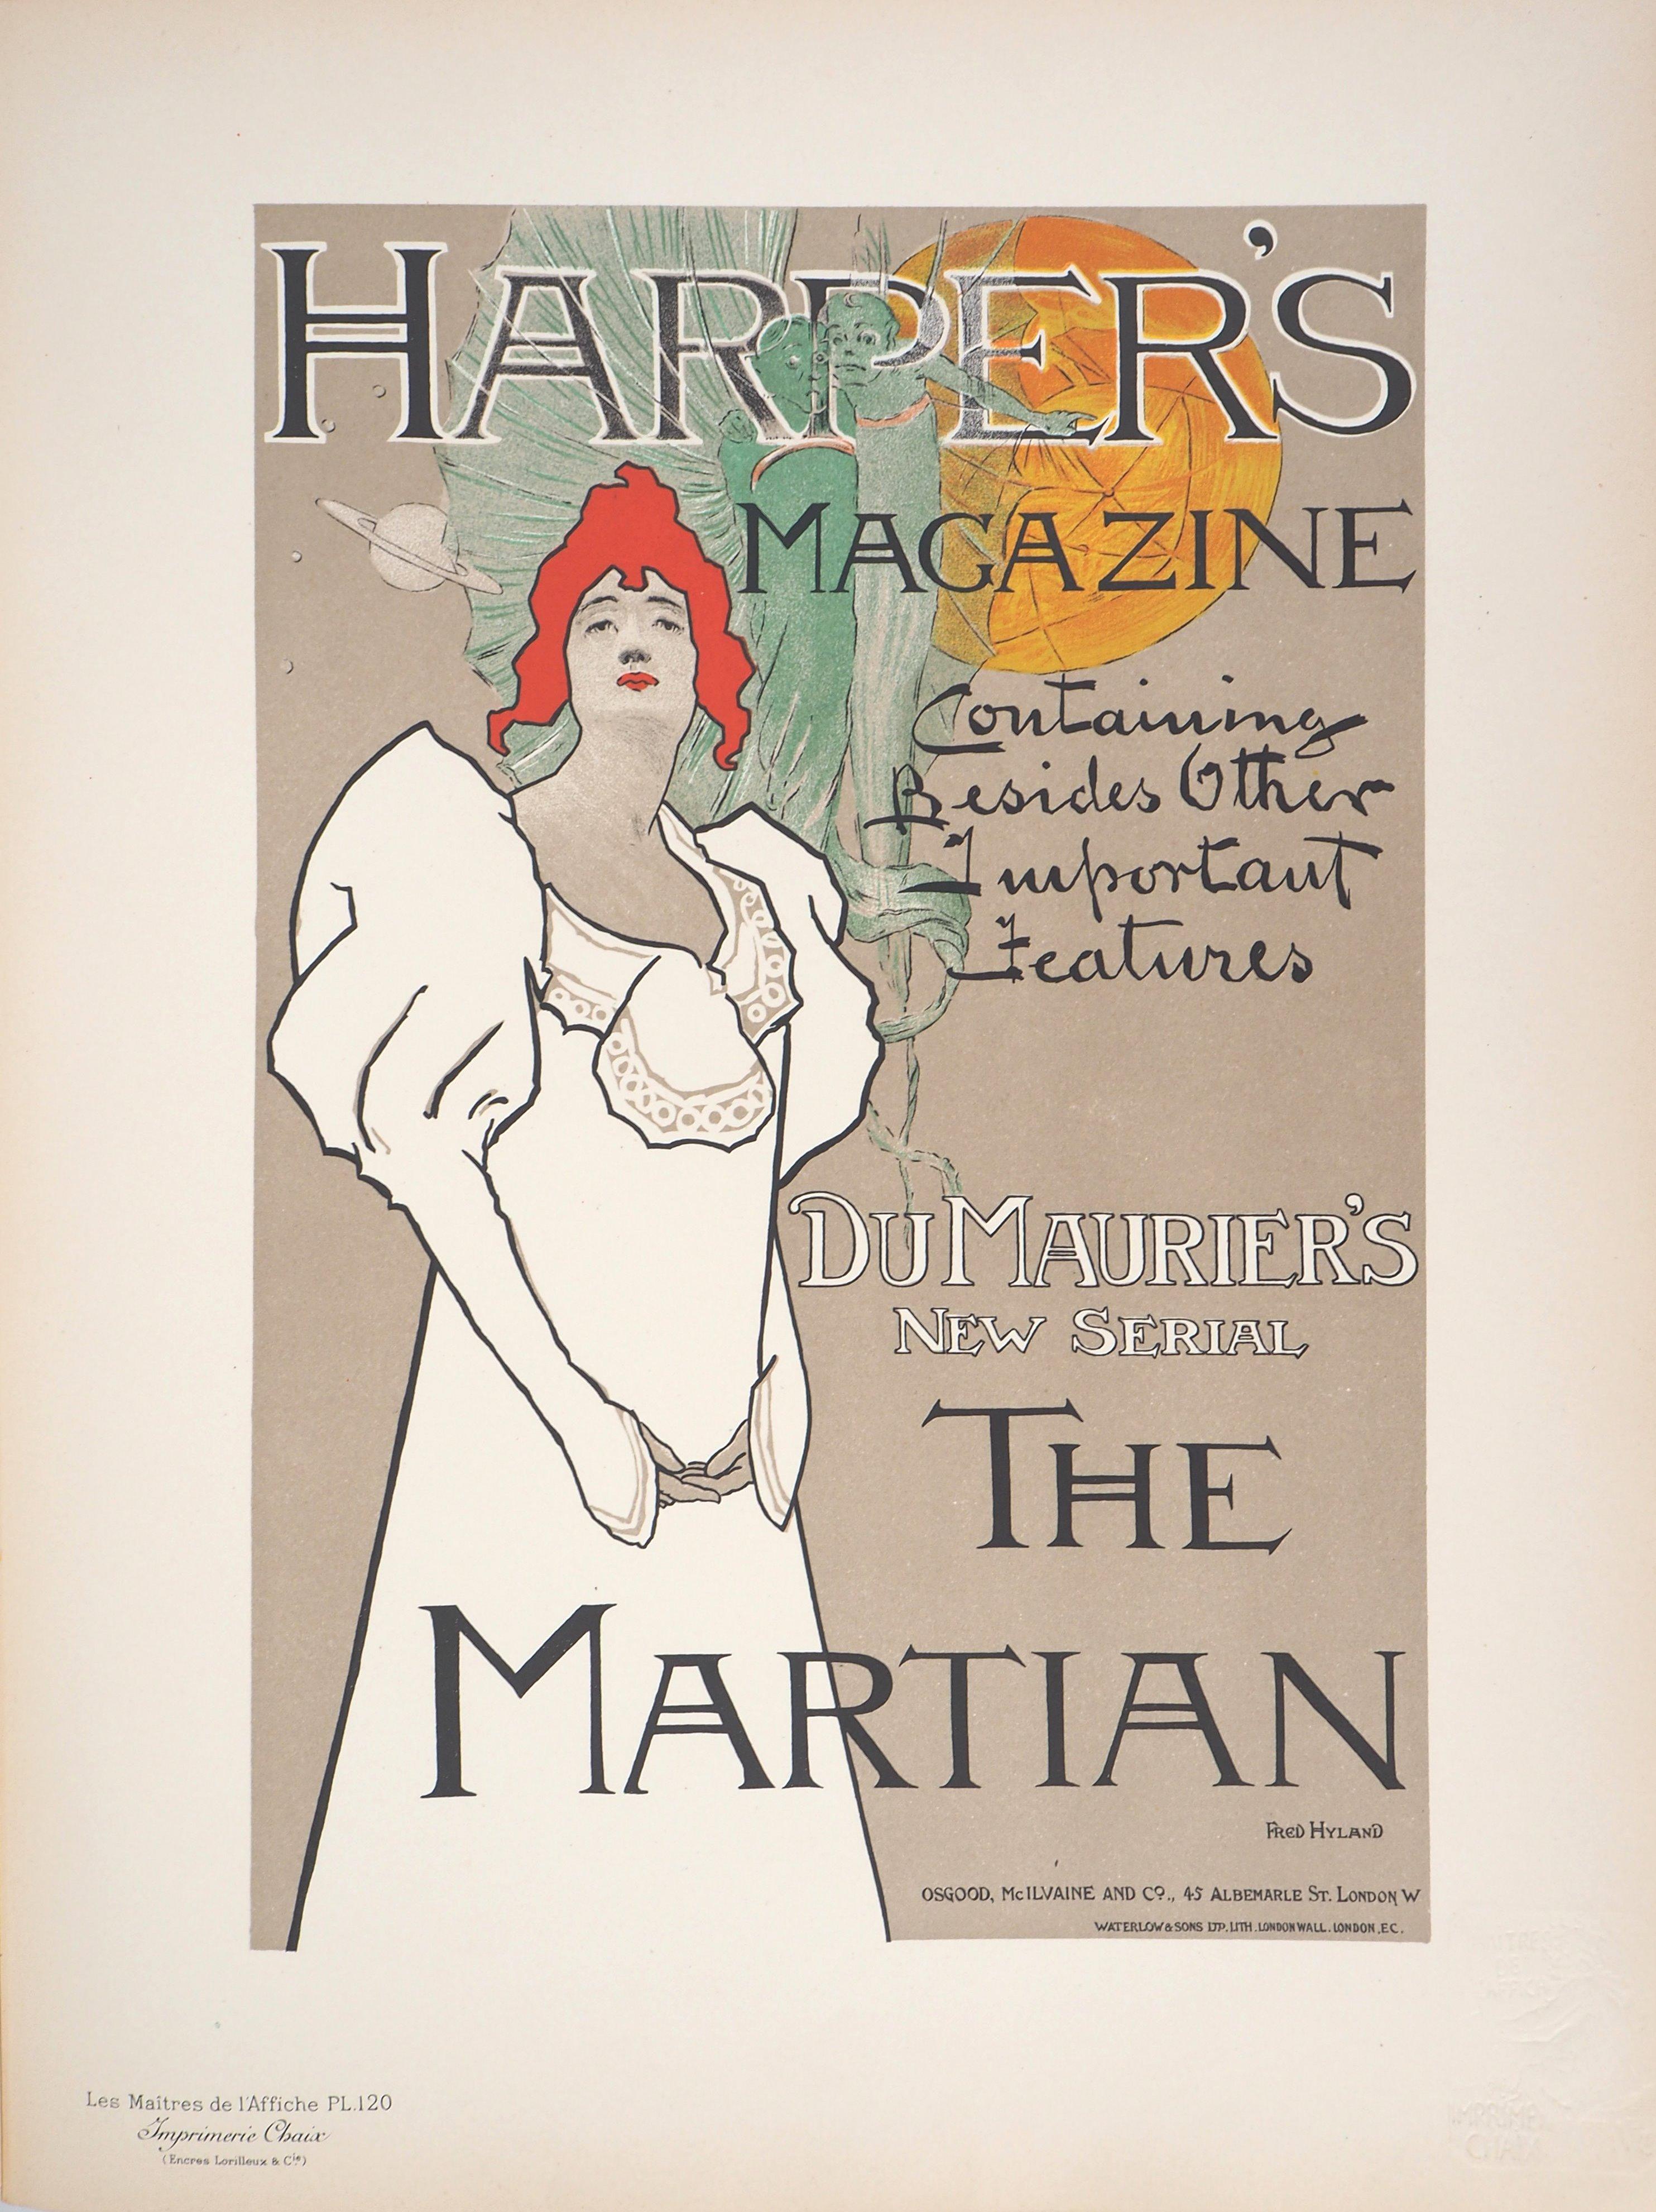 Harper's Magazine : The Martian - Lithograph (Les Maîtres de l'Affiche), 1897 - Print by Fred HYLAND